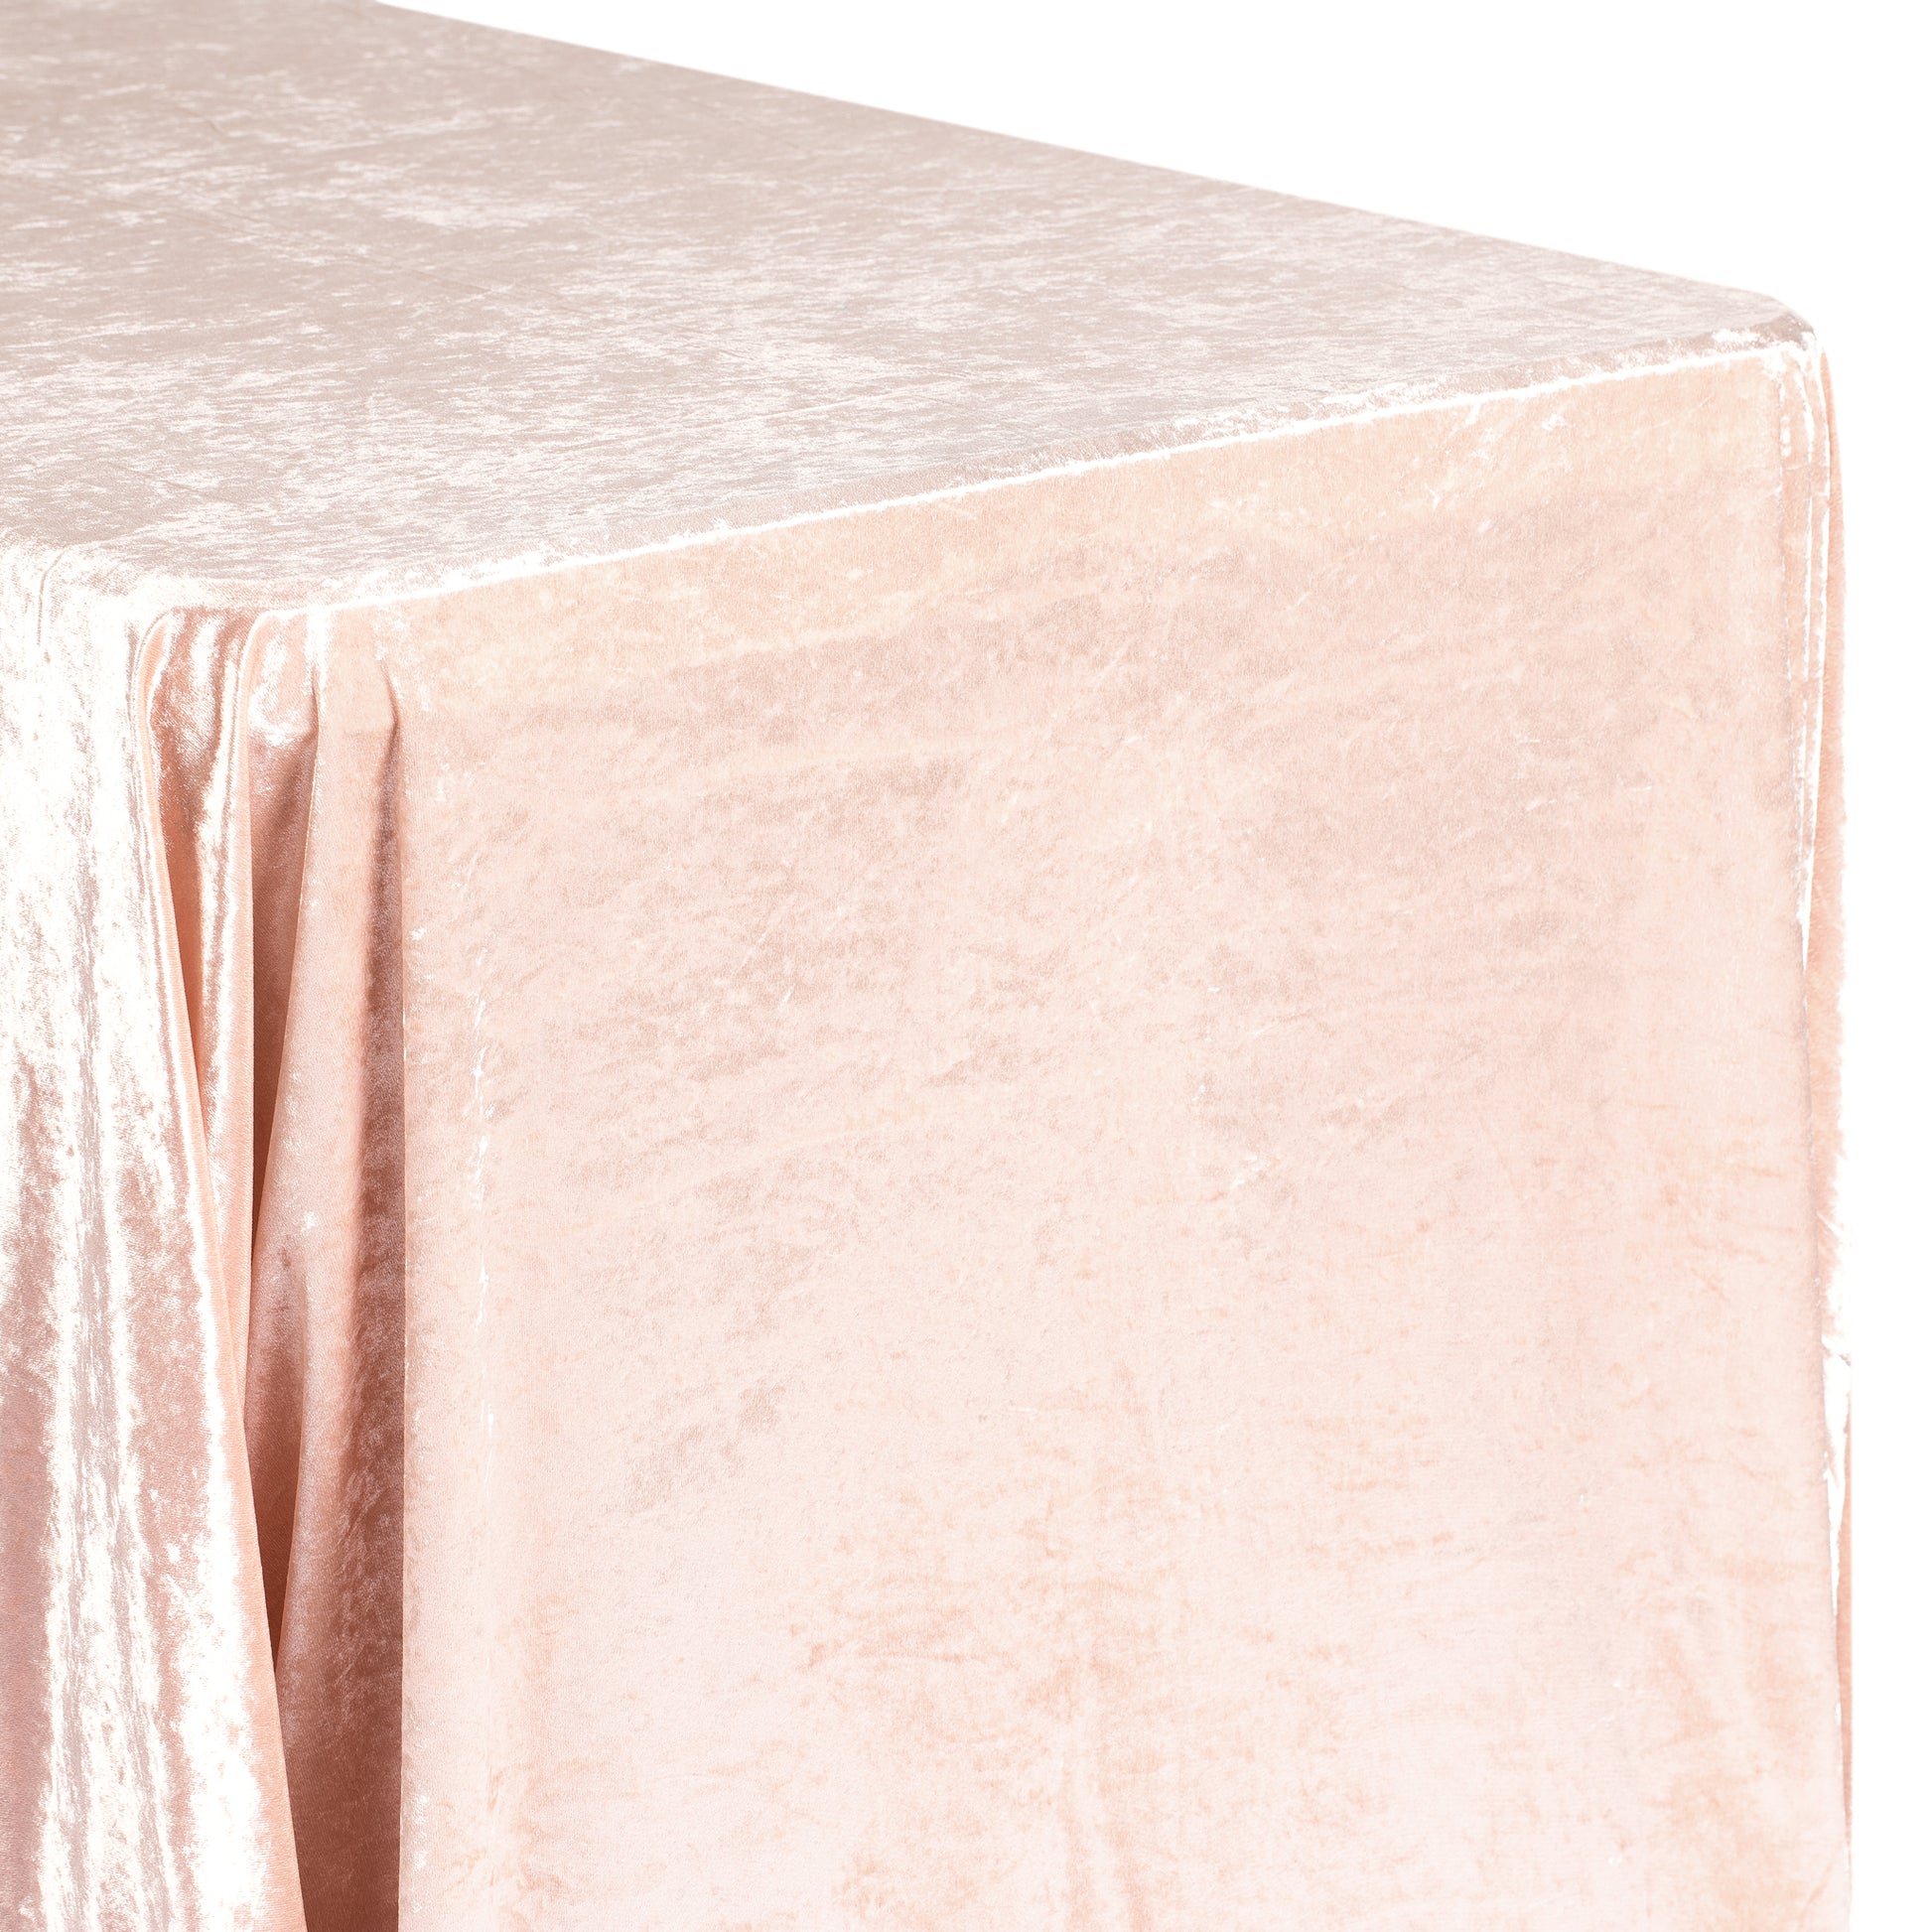 Velvet 90"x132" Rectangular Tablecloth - Blush/Rose Gold - CV Linens